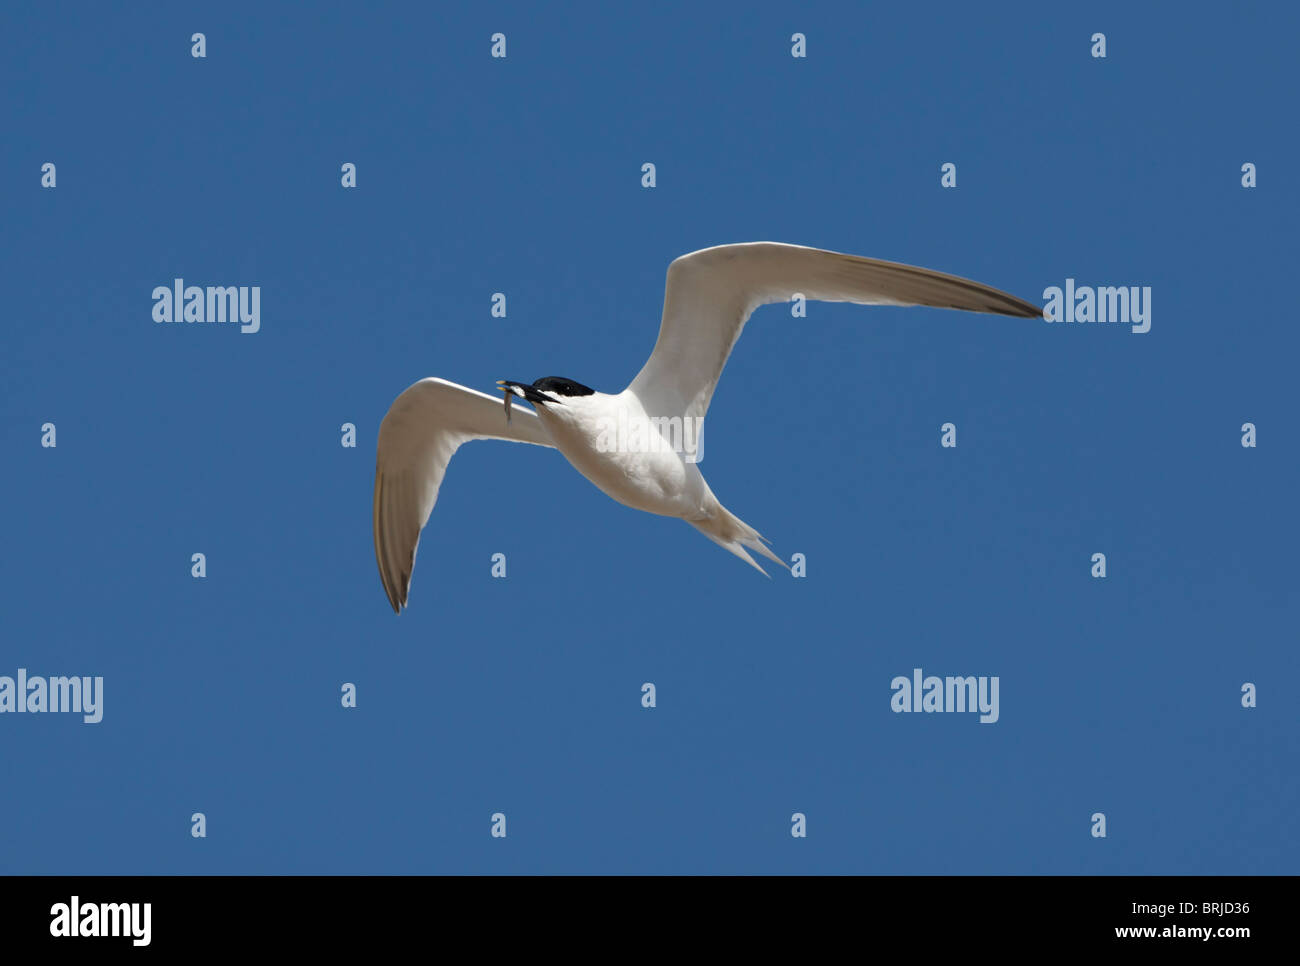 Sandwich Tern in flight on a blue sky Stock Photo